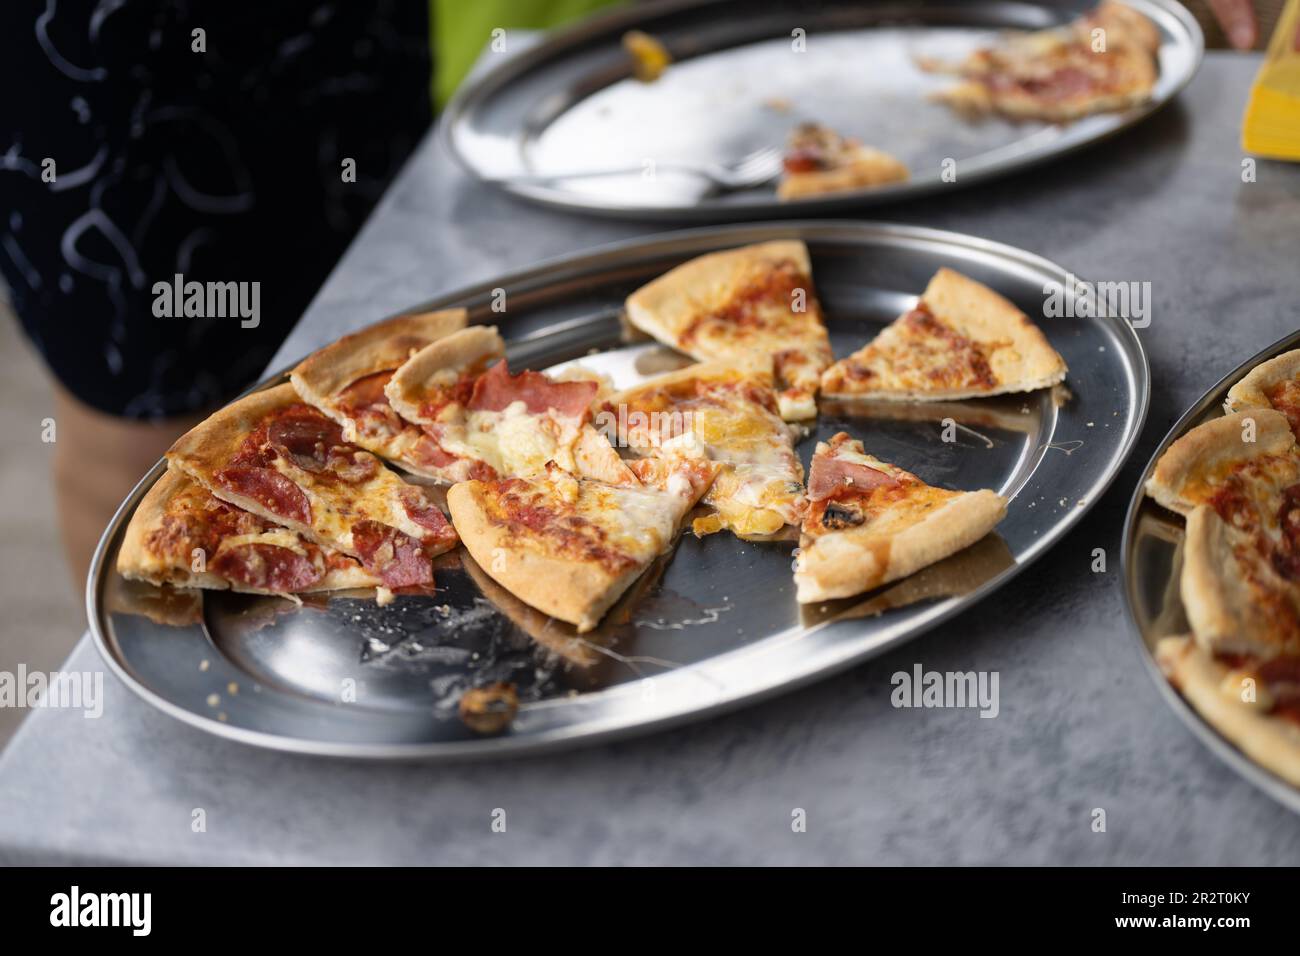 Food, Deutschland, May 20. Ein Bild von einem frisch gebackenen, schmackhaften Pizzakuchen, der liebevoll in kleine Stücke geschnitten wurde, strahlt Stock Photo